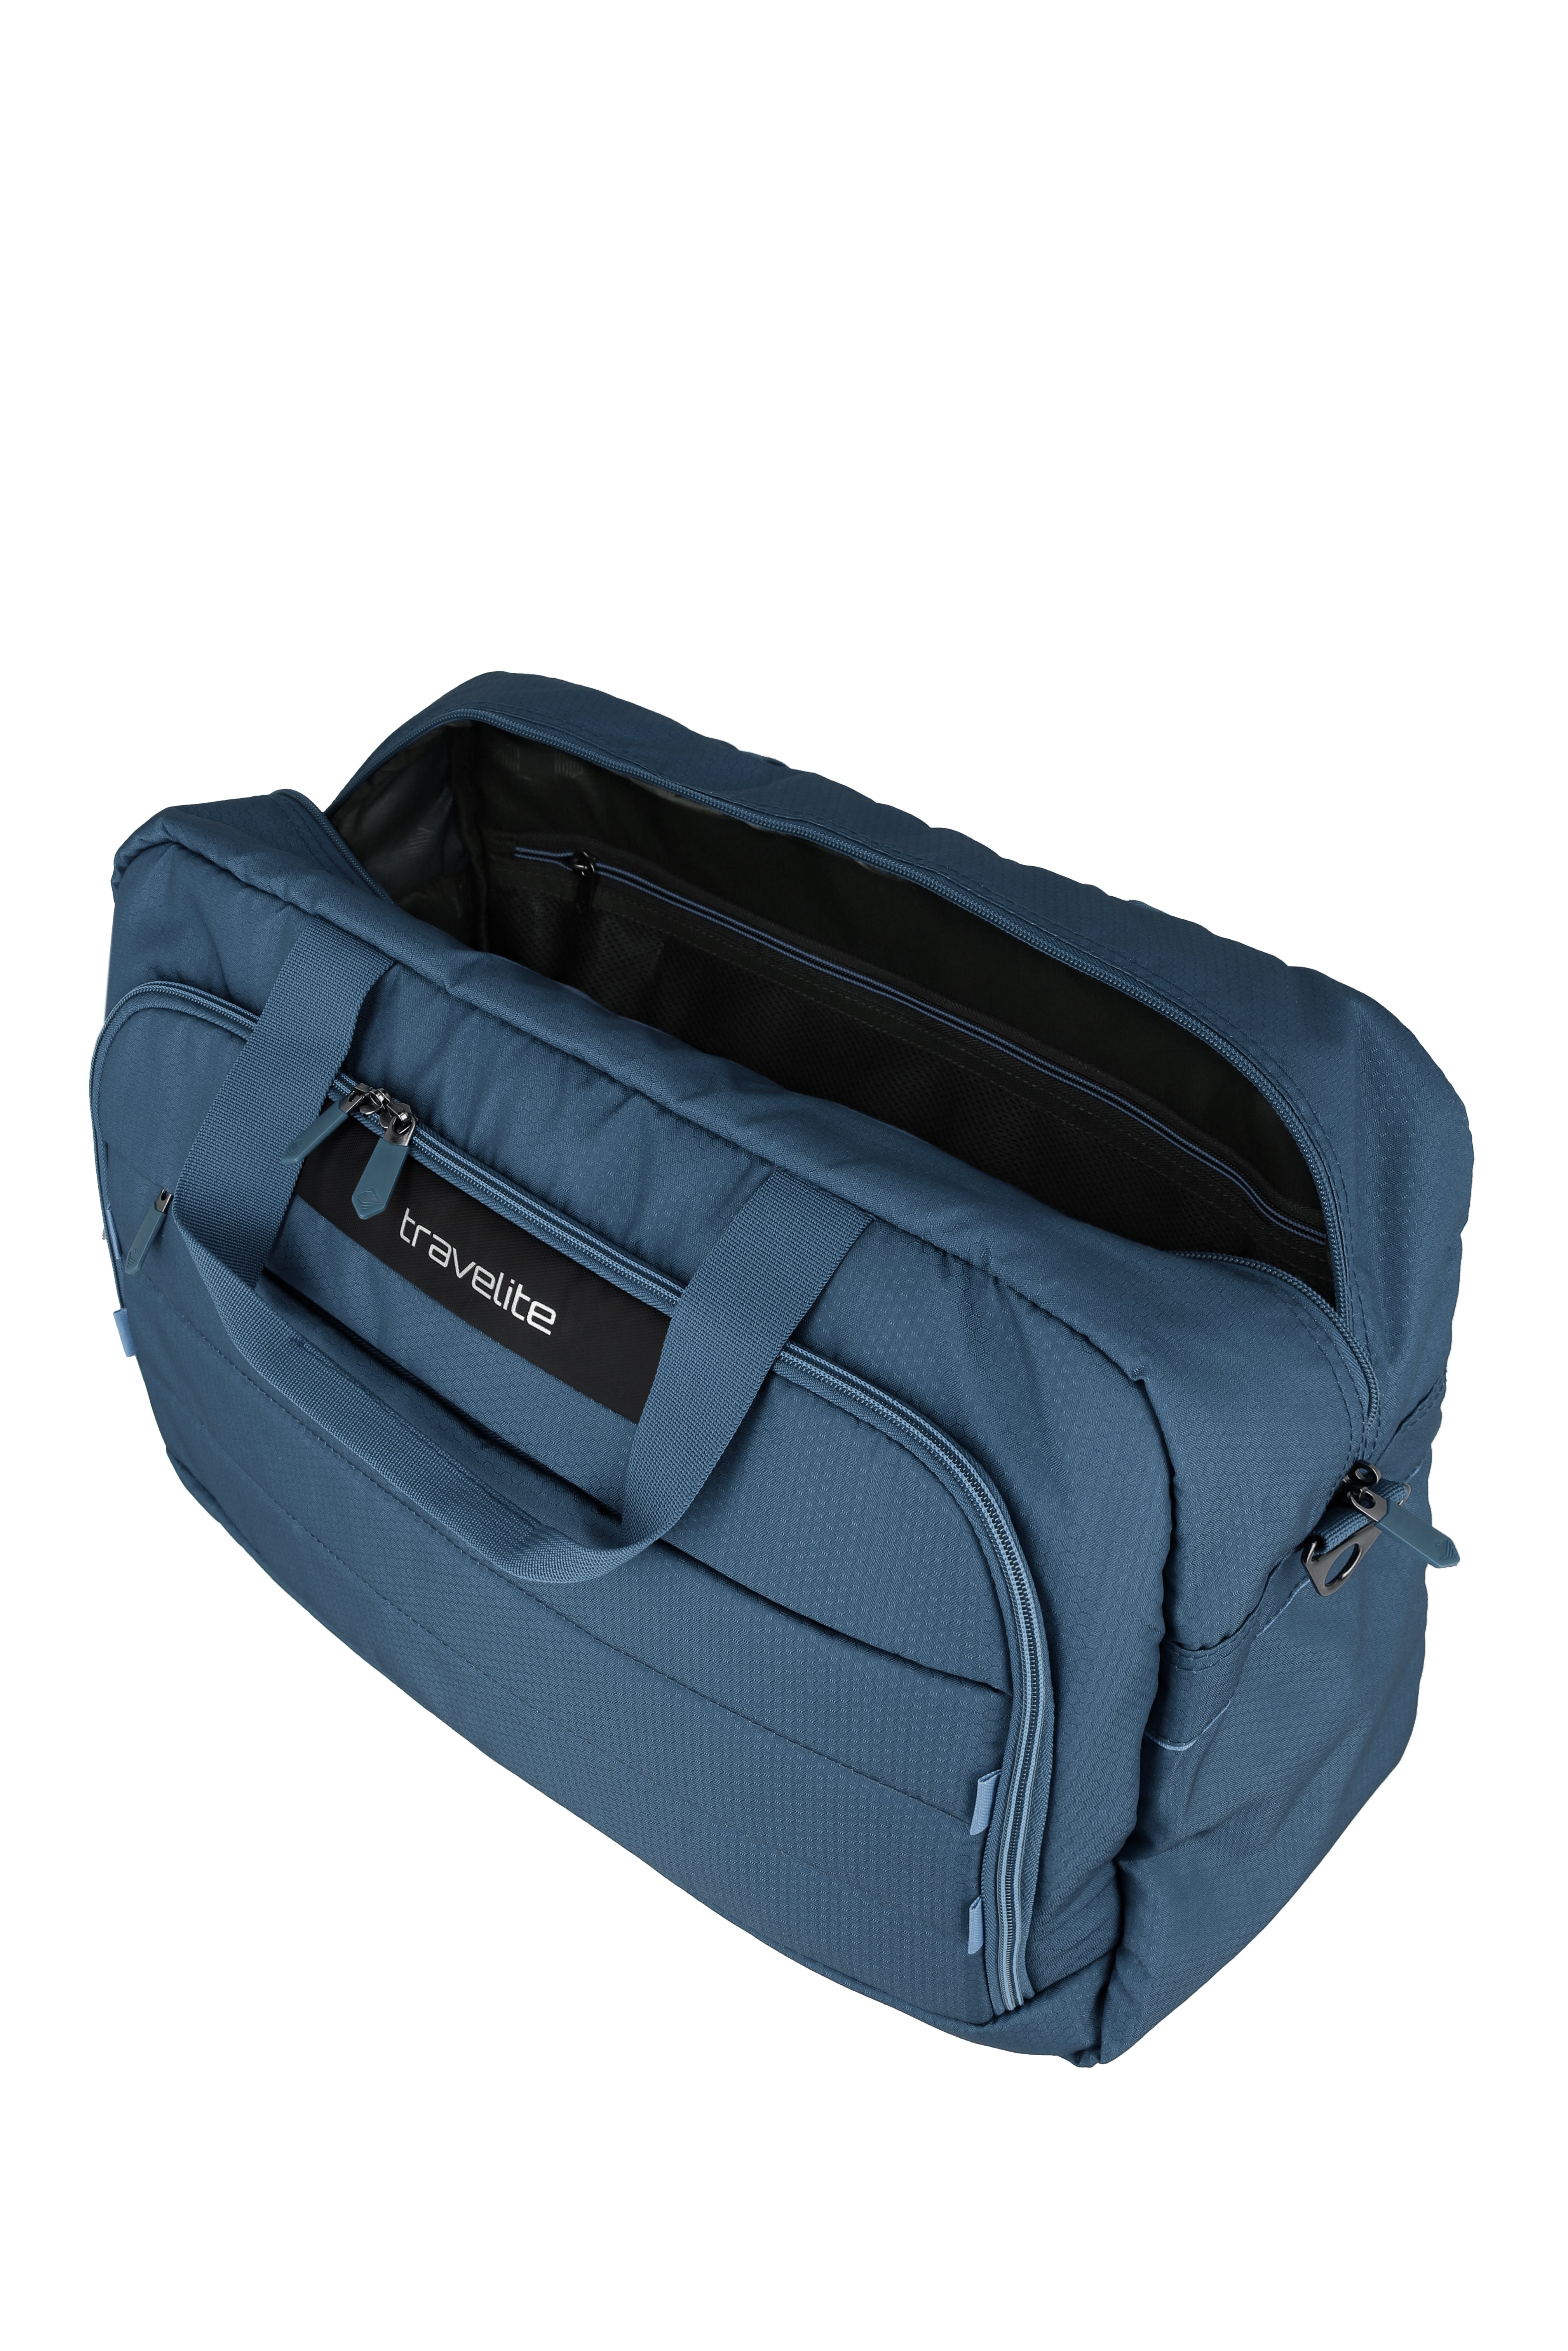 Skaii Weekender/Backpack blue